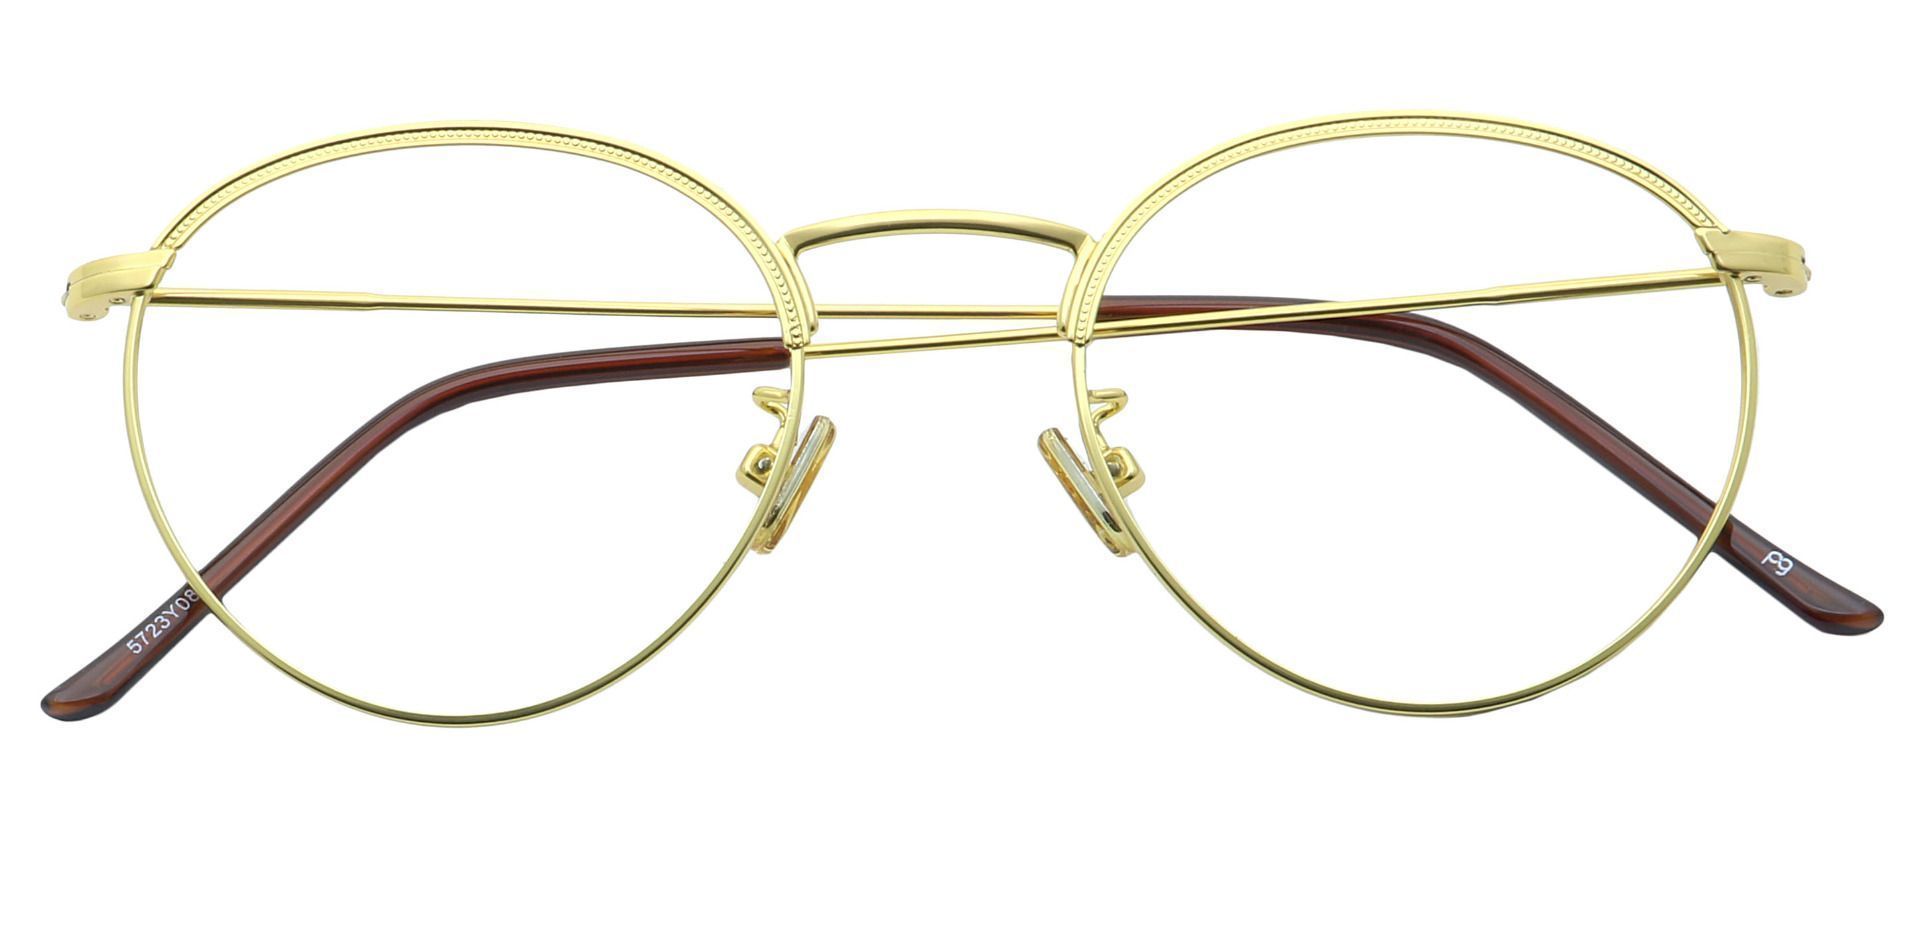 Cooper Oval Blue Light Blocking Glasses - Tortoise | Men's Eyeglasses ...